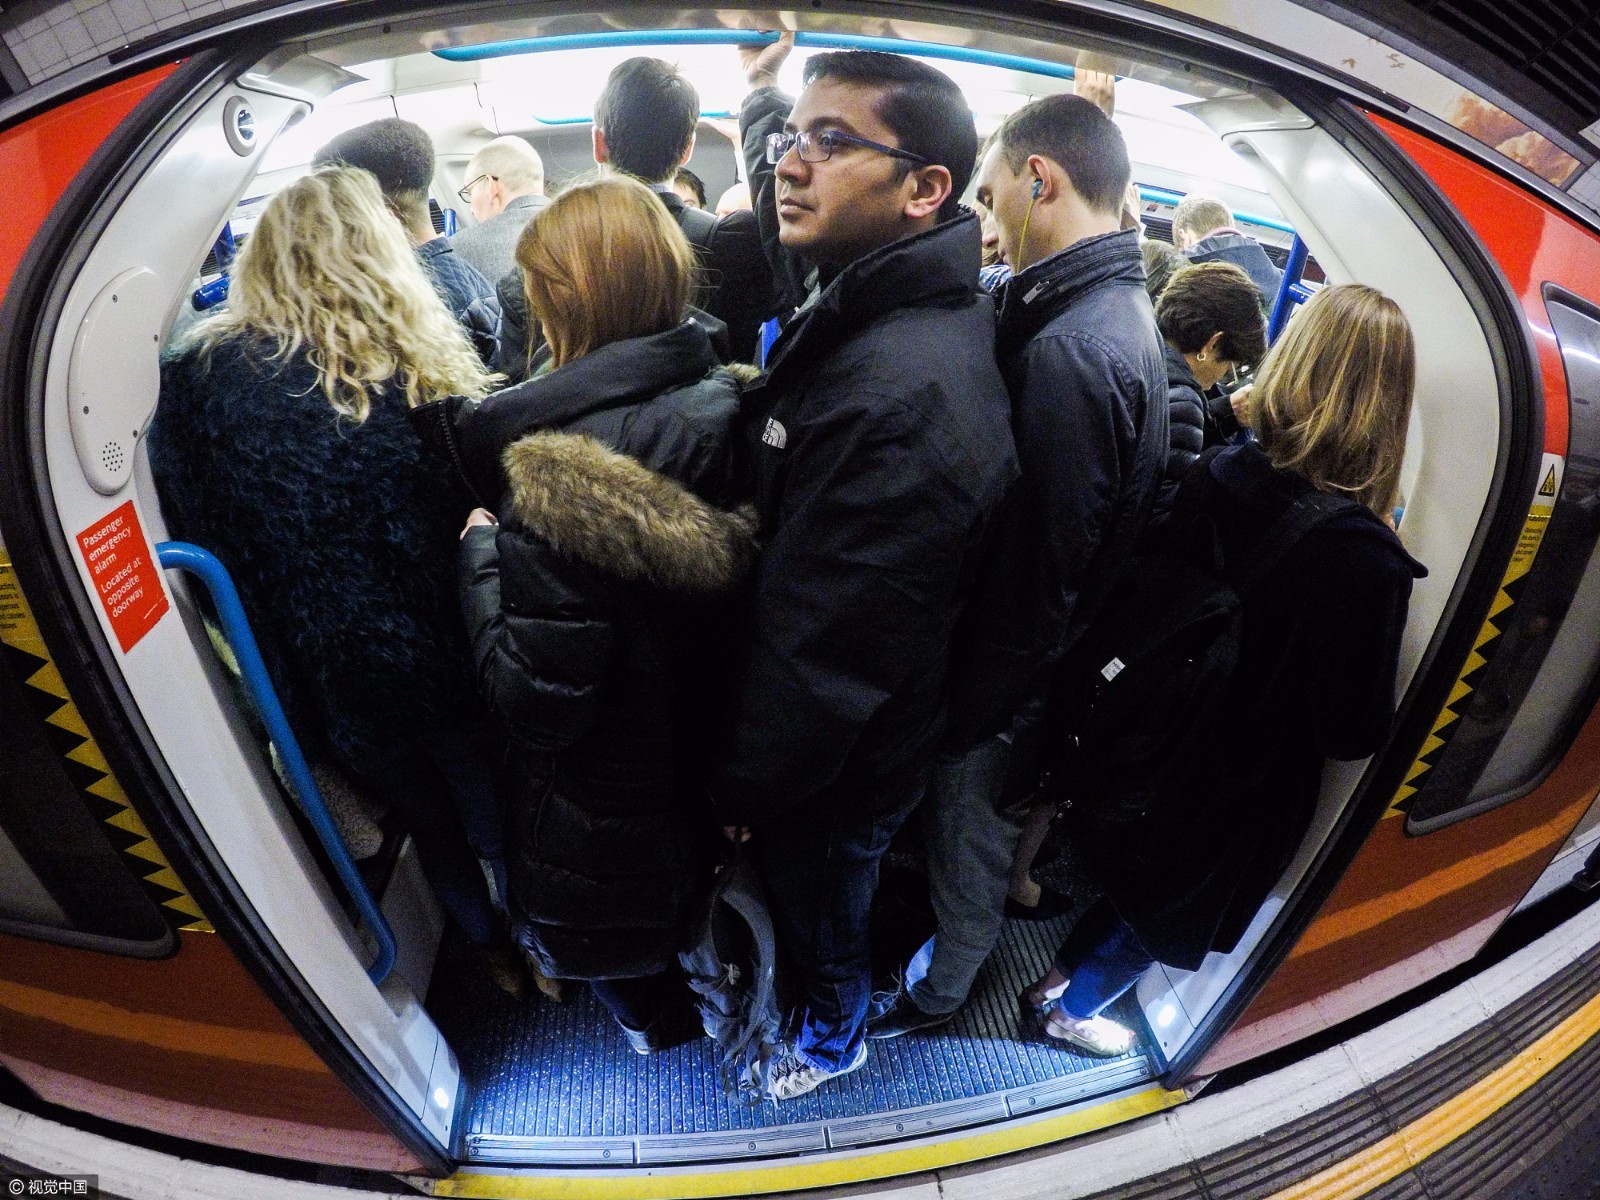 实拍伦敦地铁高峰期:原来比北京还挤!